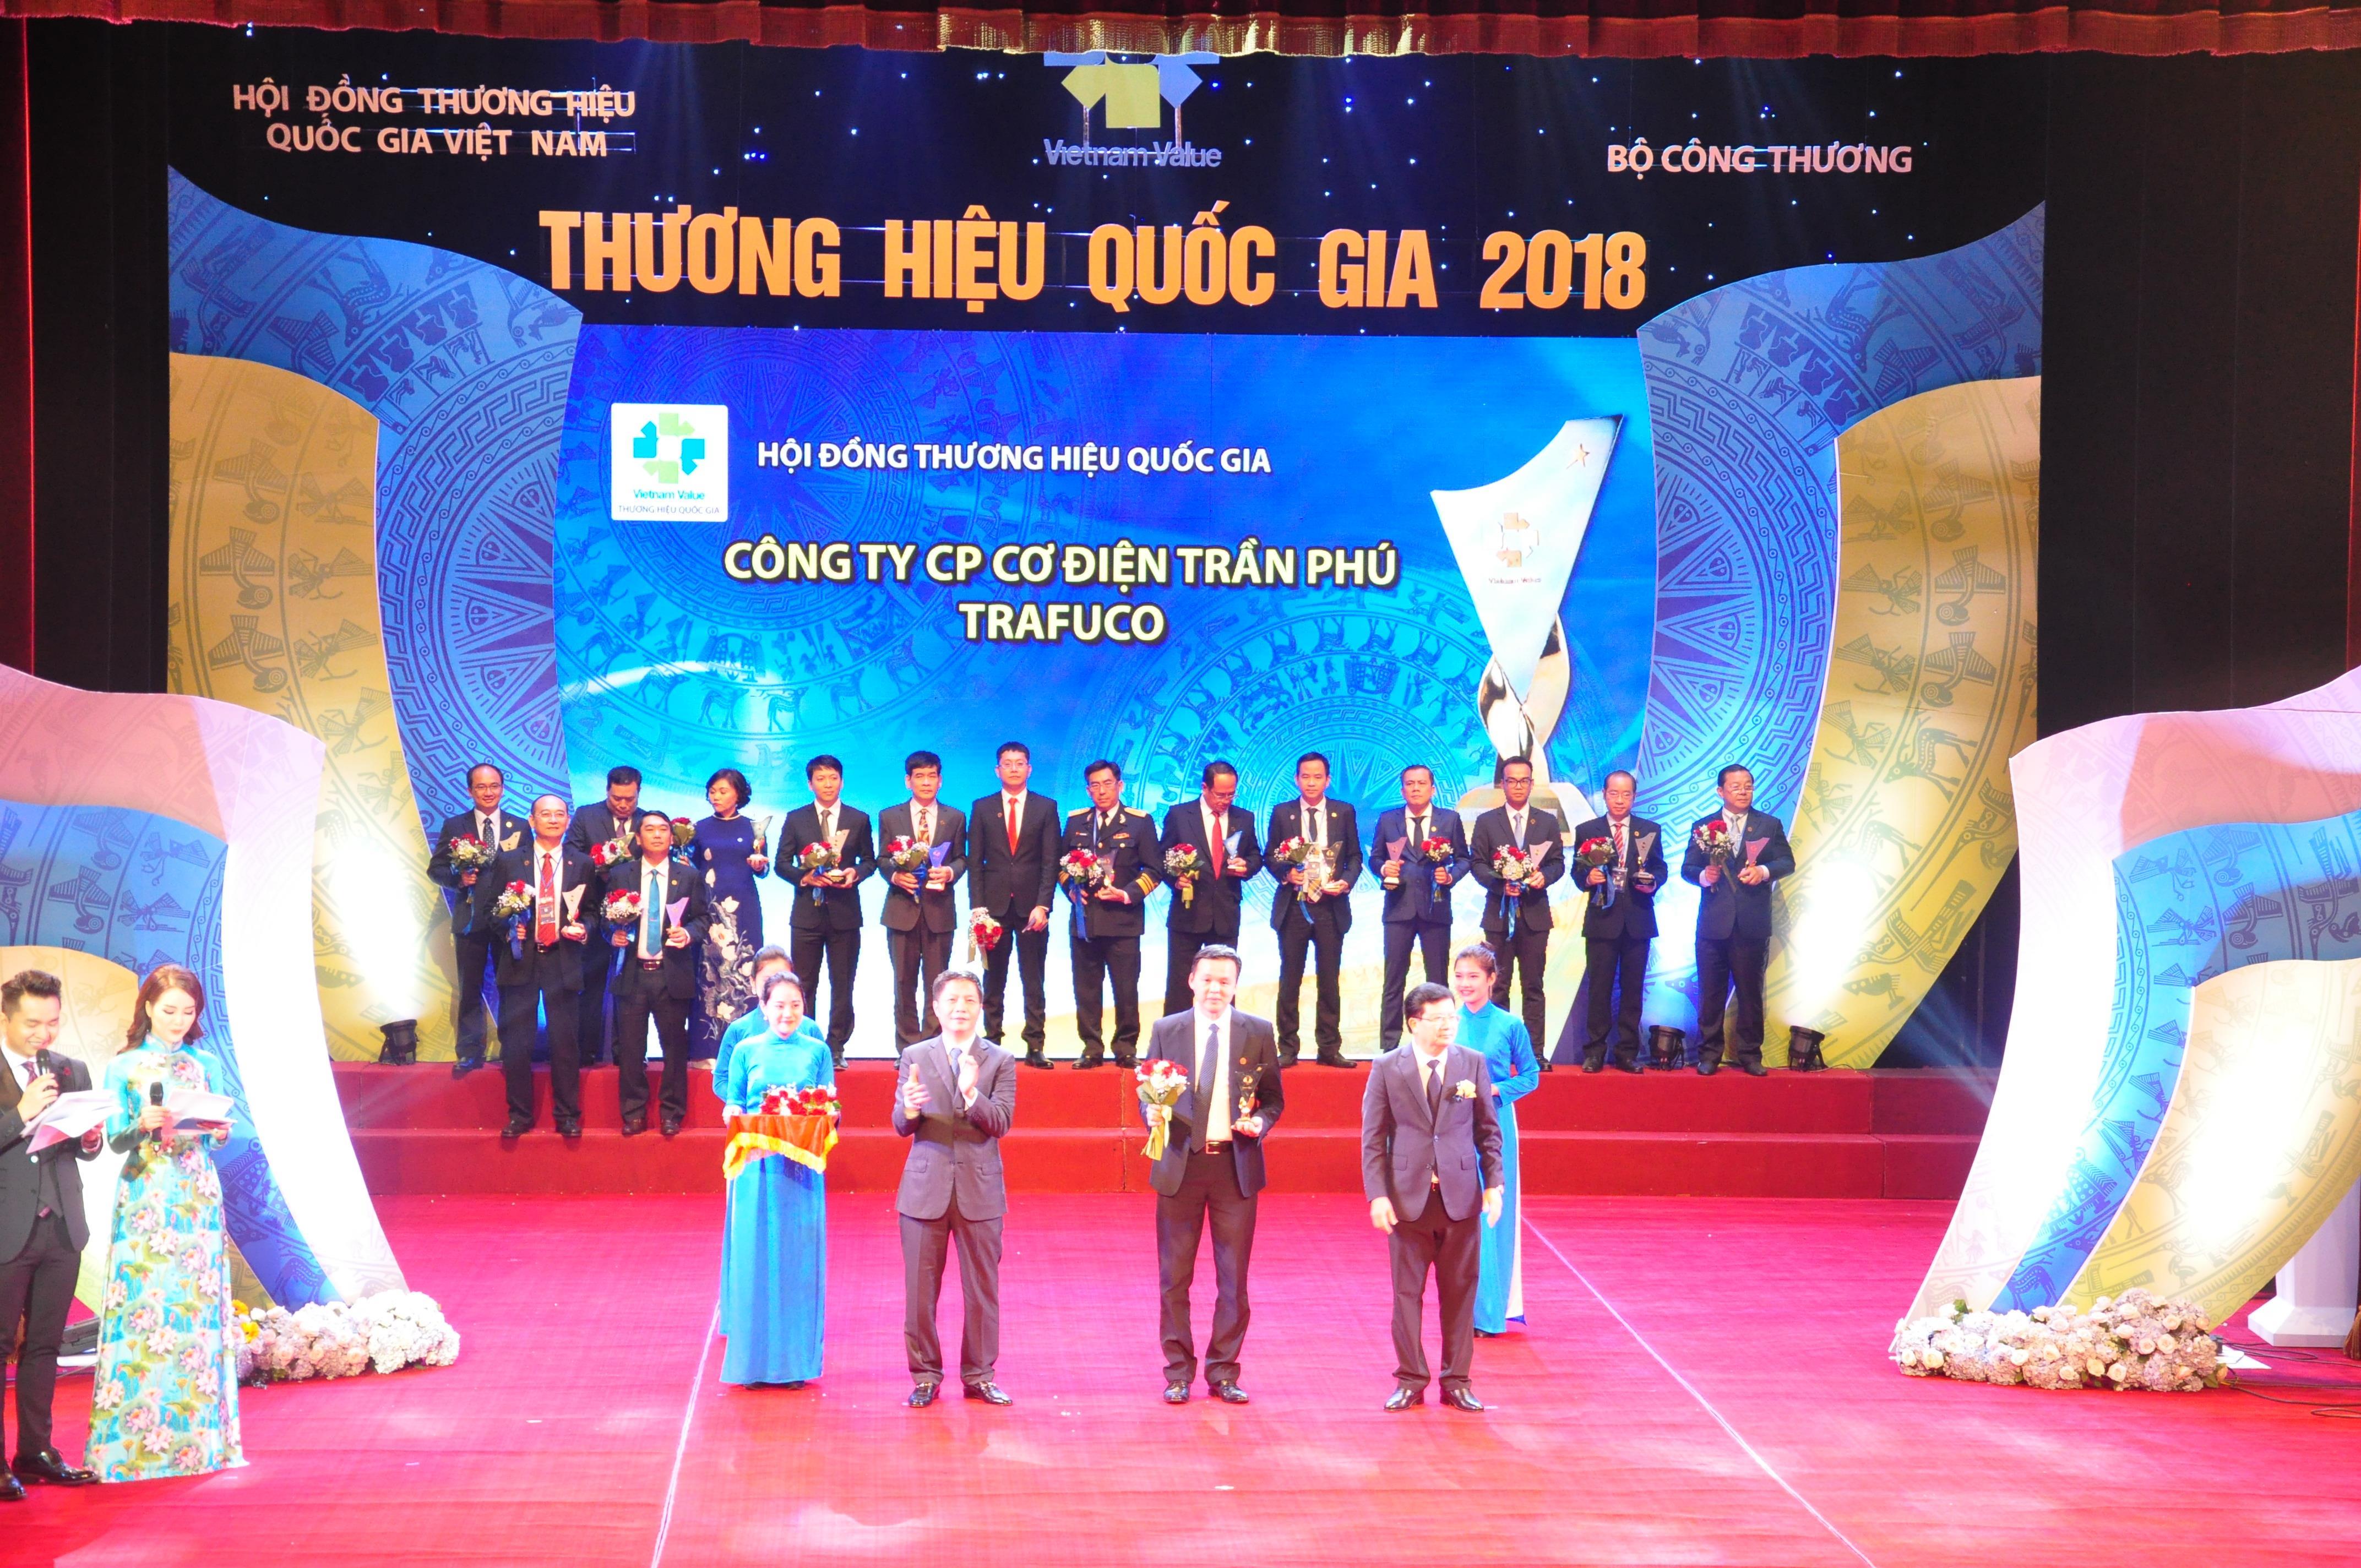 Trần Phú - tự hào là thương hiệu quốc gia